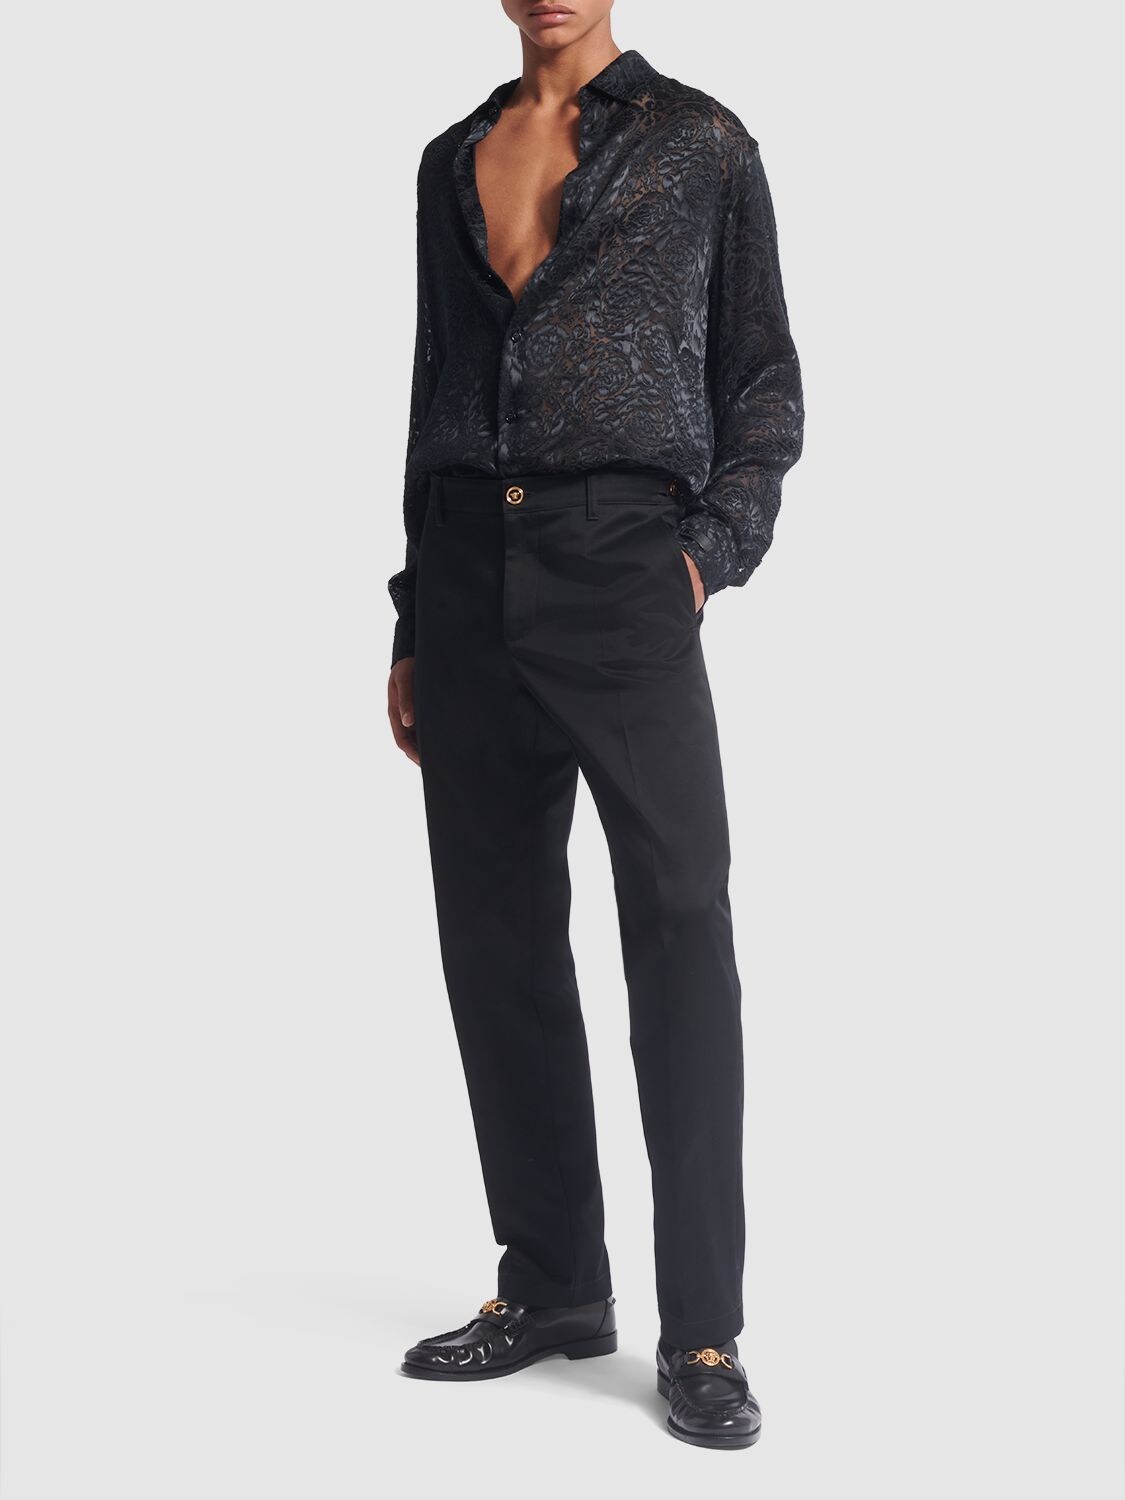 Shop Versace Barocco Printed Viscose & Silk Shirt In Black